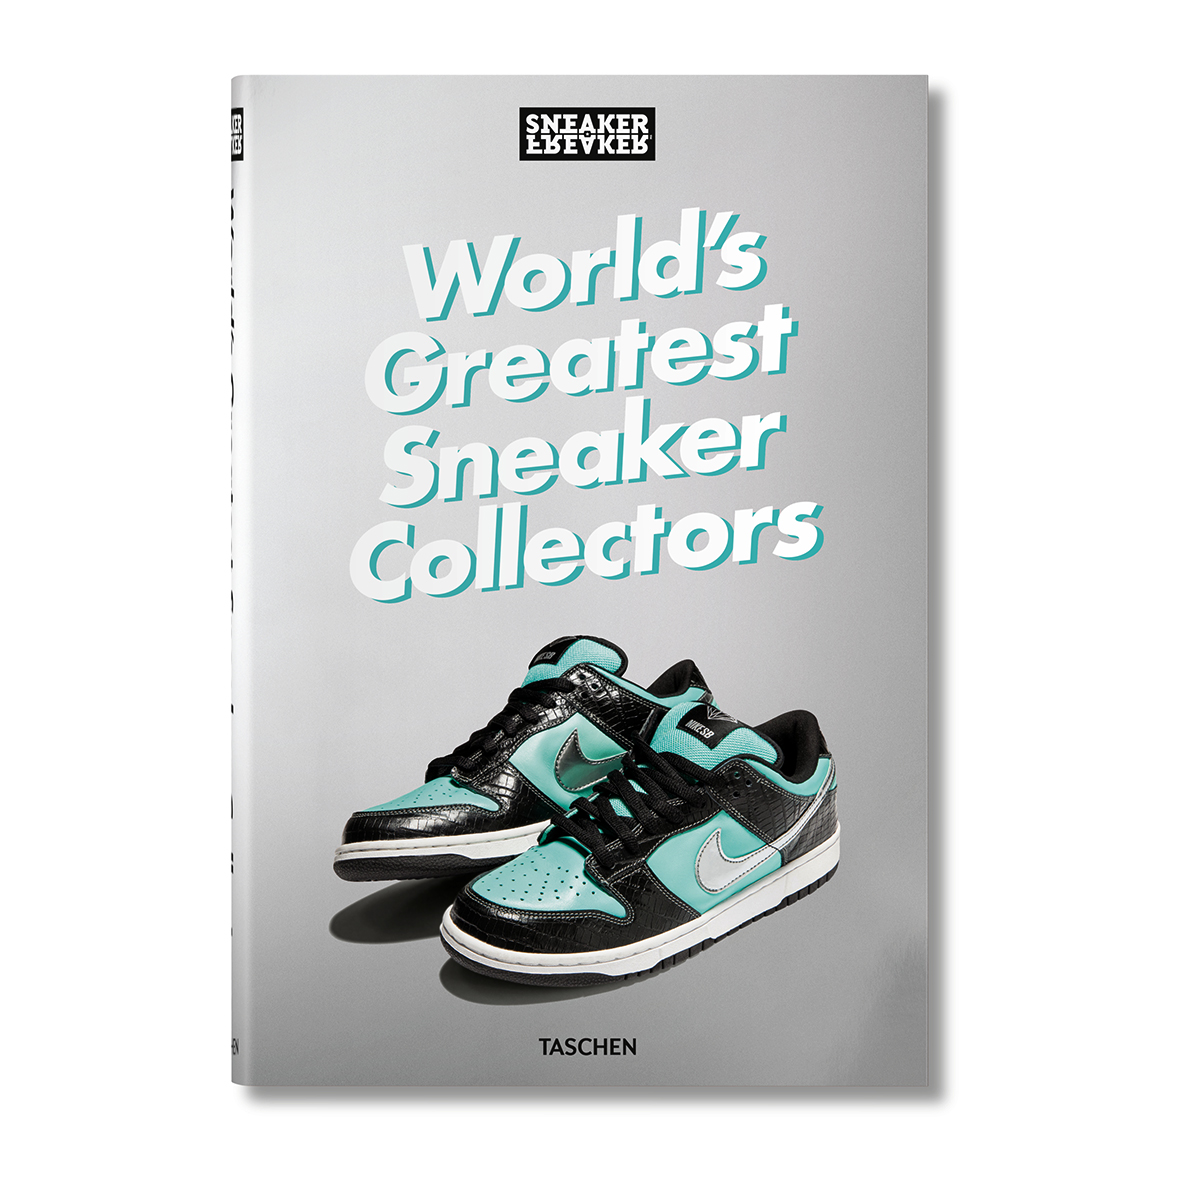 Sneaker Freaker - World's Greatest Sneaker Collectors